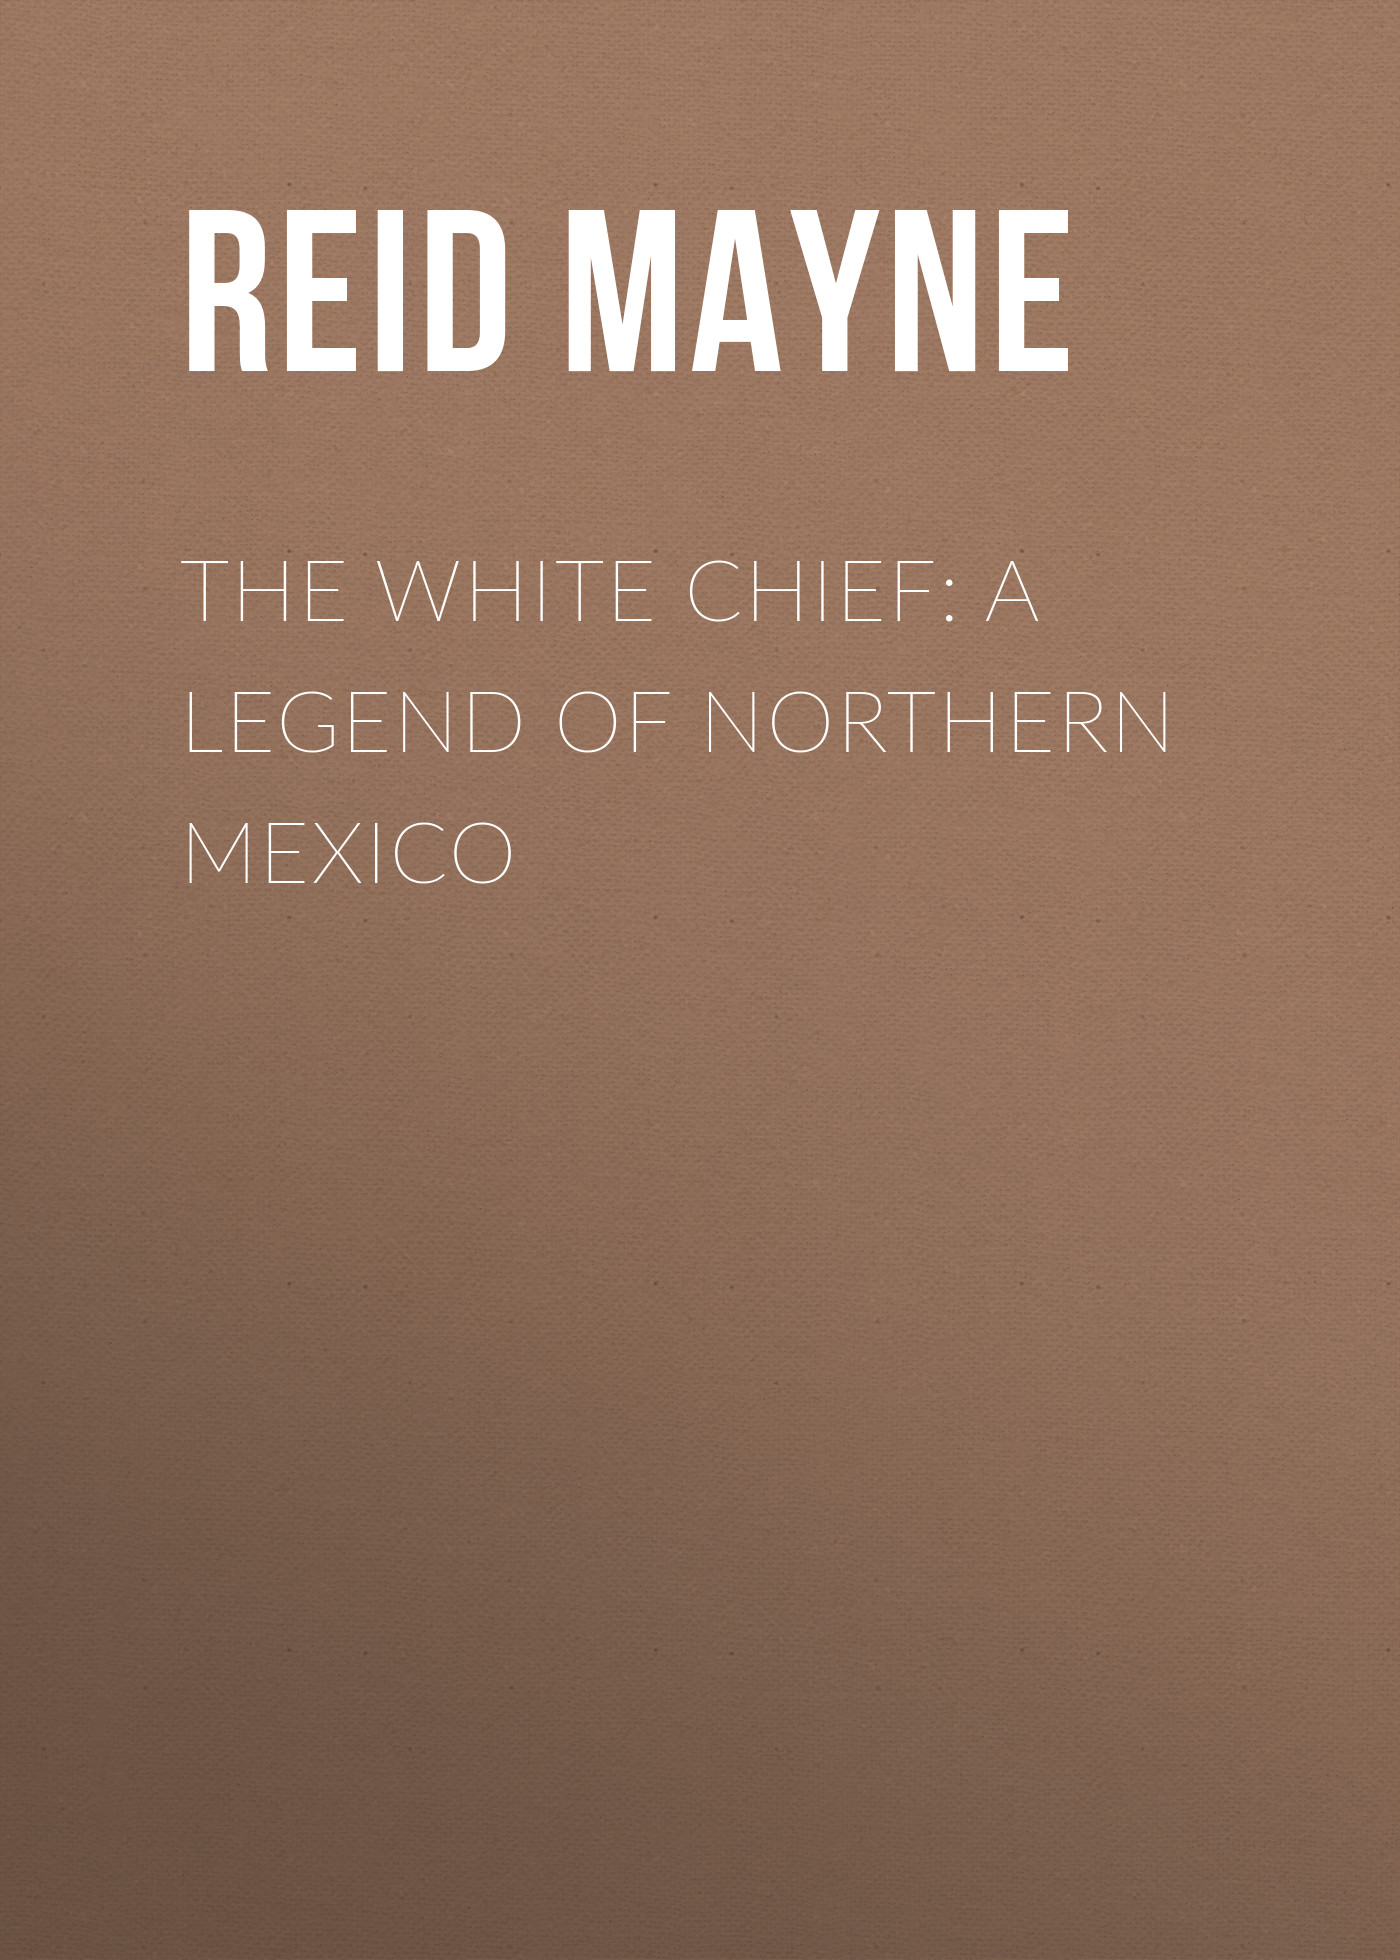 Книга The White Chief: A Legend of Northern Mexico из серии , созданная Mayne Reid, может относится к жанру Литература 19 века, Зарубежная старинная литература, Зарубежная классика. Стоимость электронной книги The White Chief: A Legend of Northern Mexico с идентификатором 25449100 составляет 0 руб.